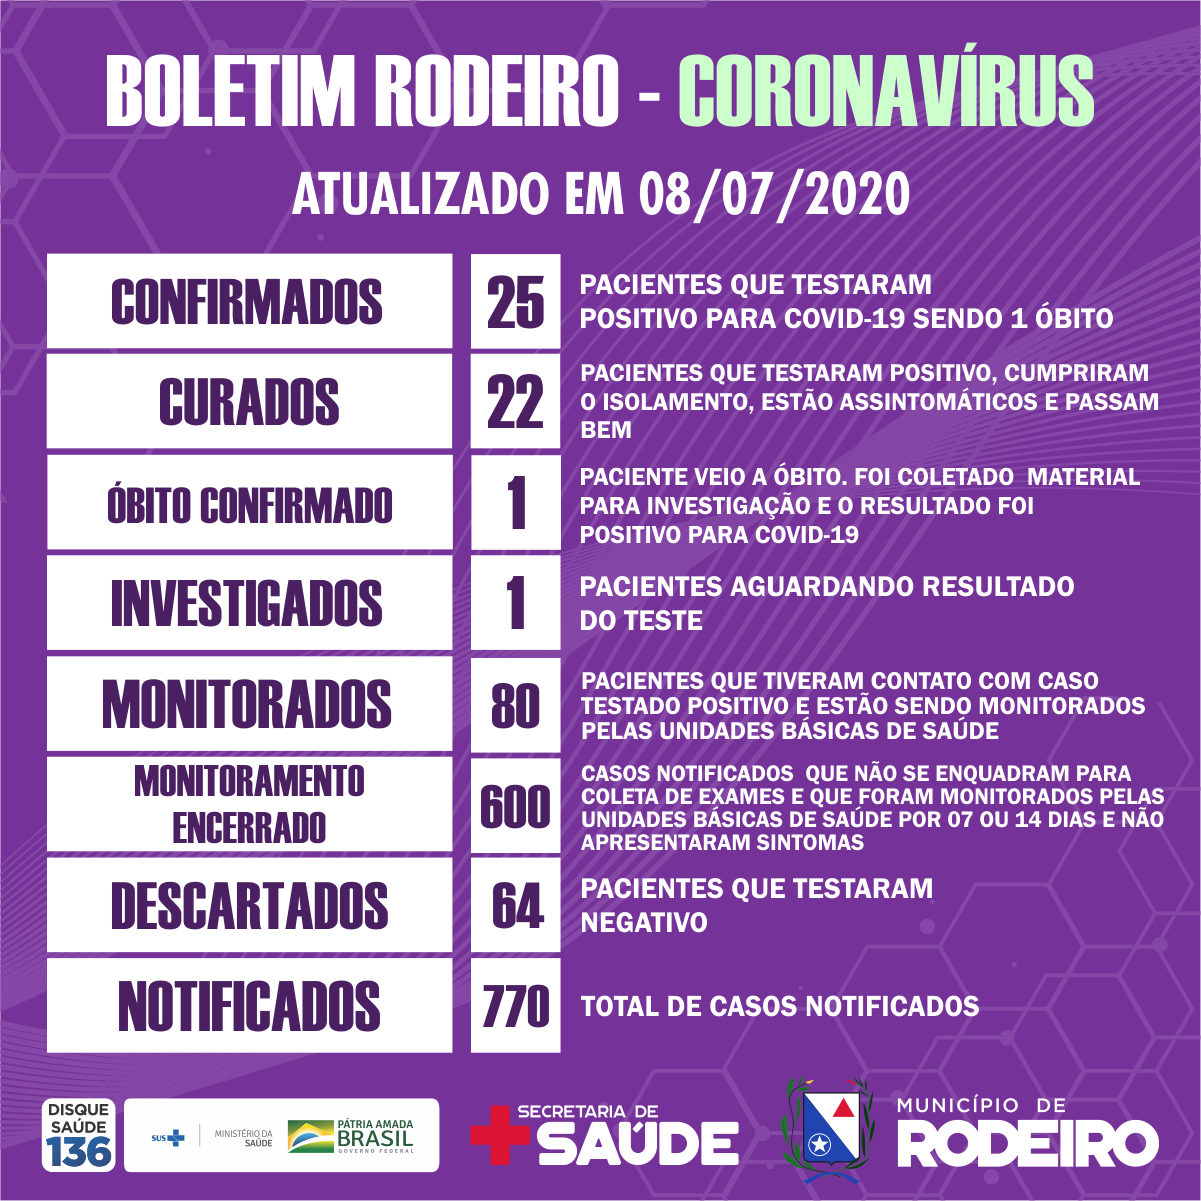 Boletim epidemiológico do Município de Rodeiro coronavírus, atualizado em 08/07/2020